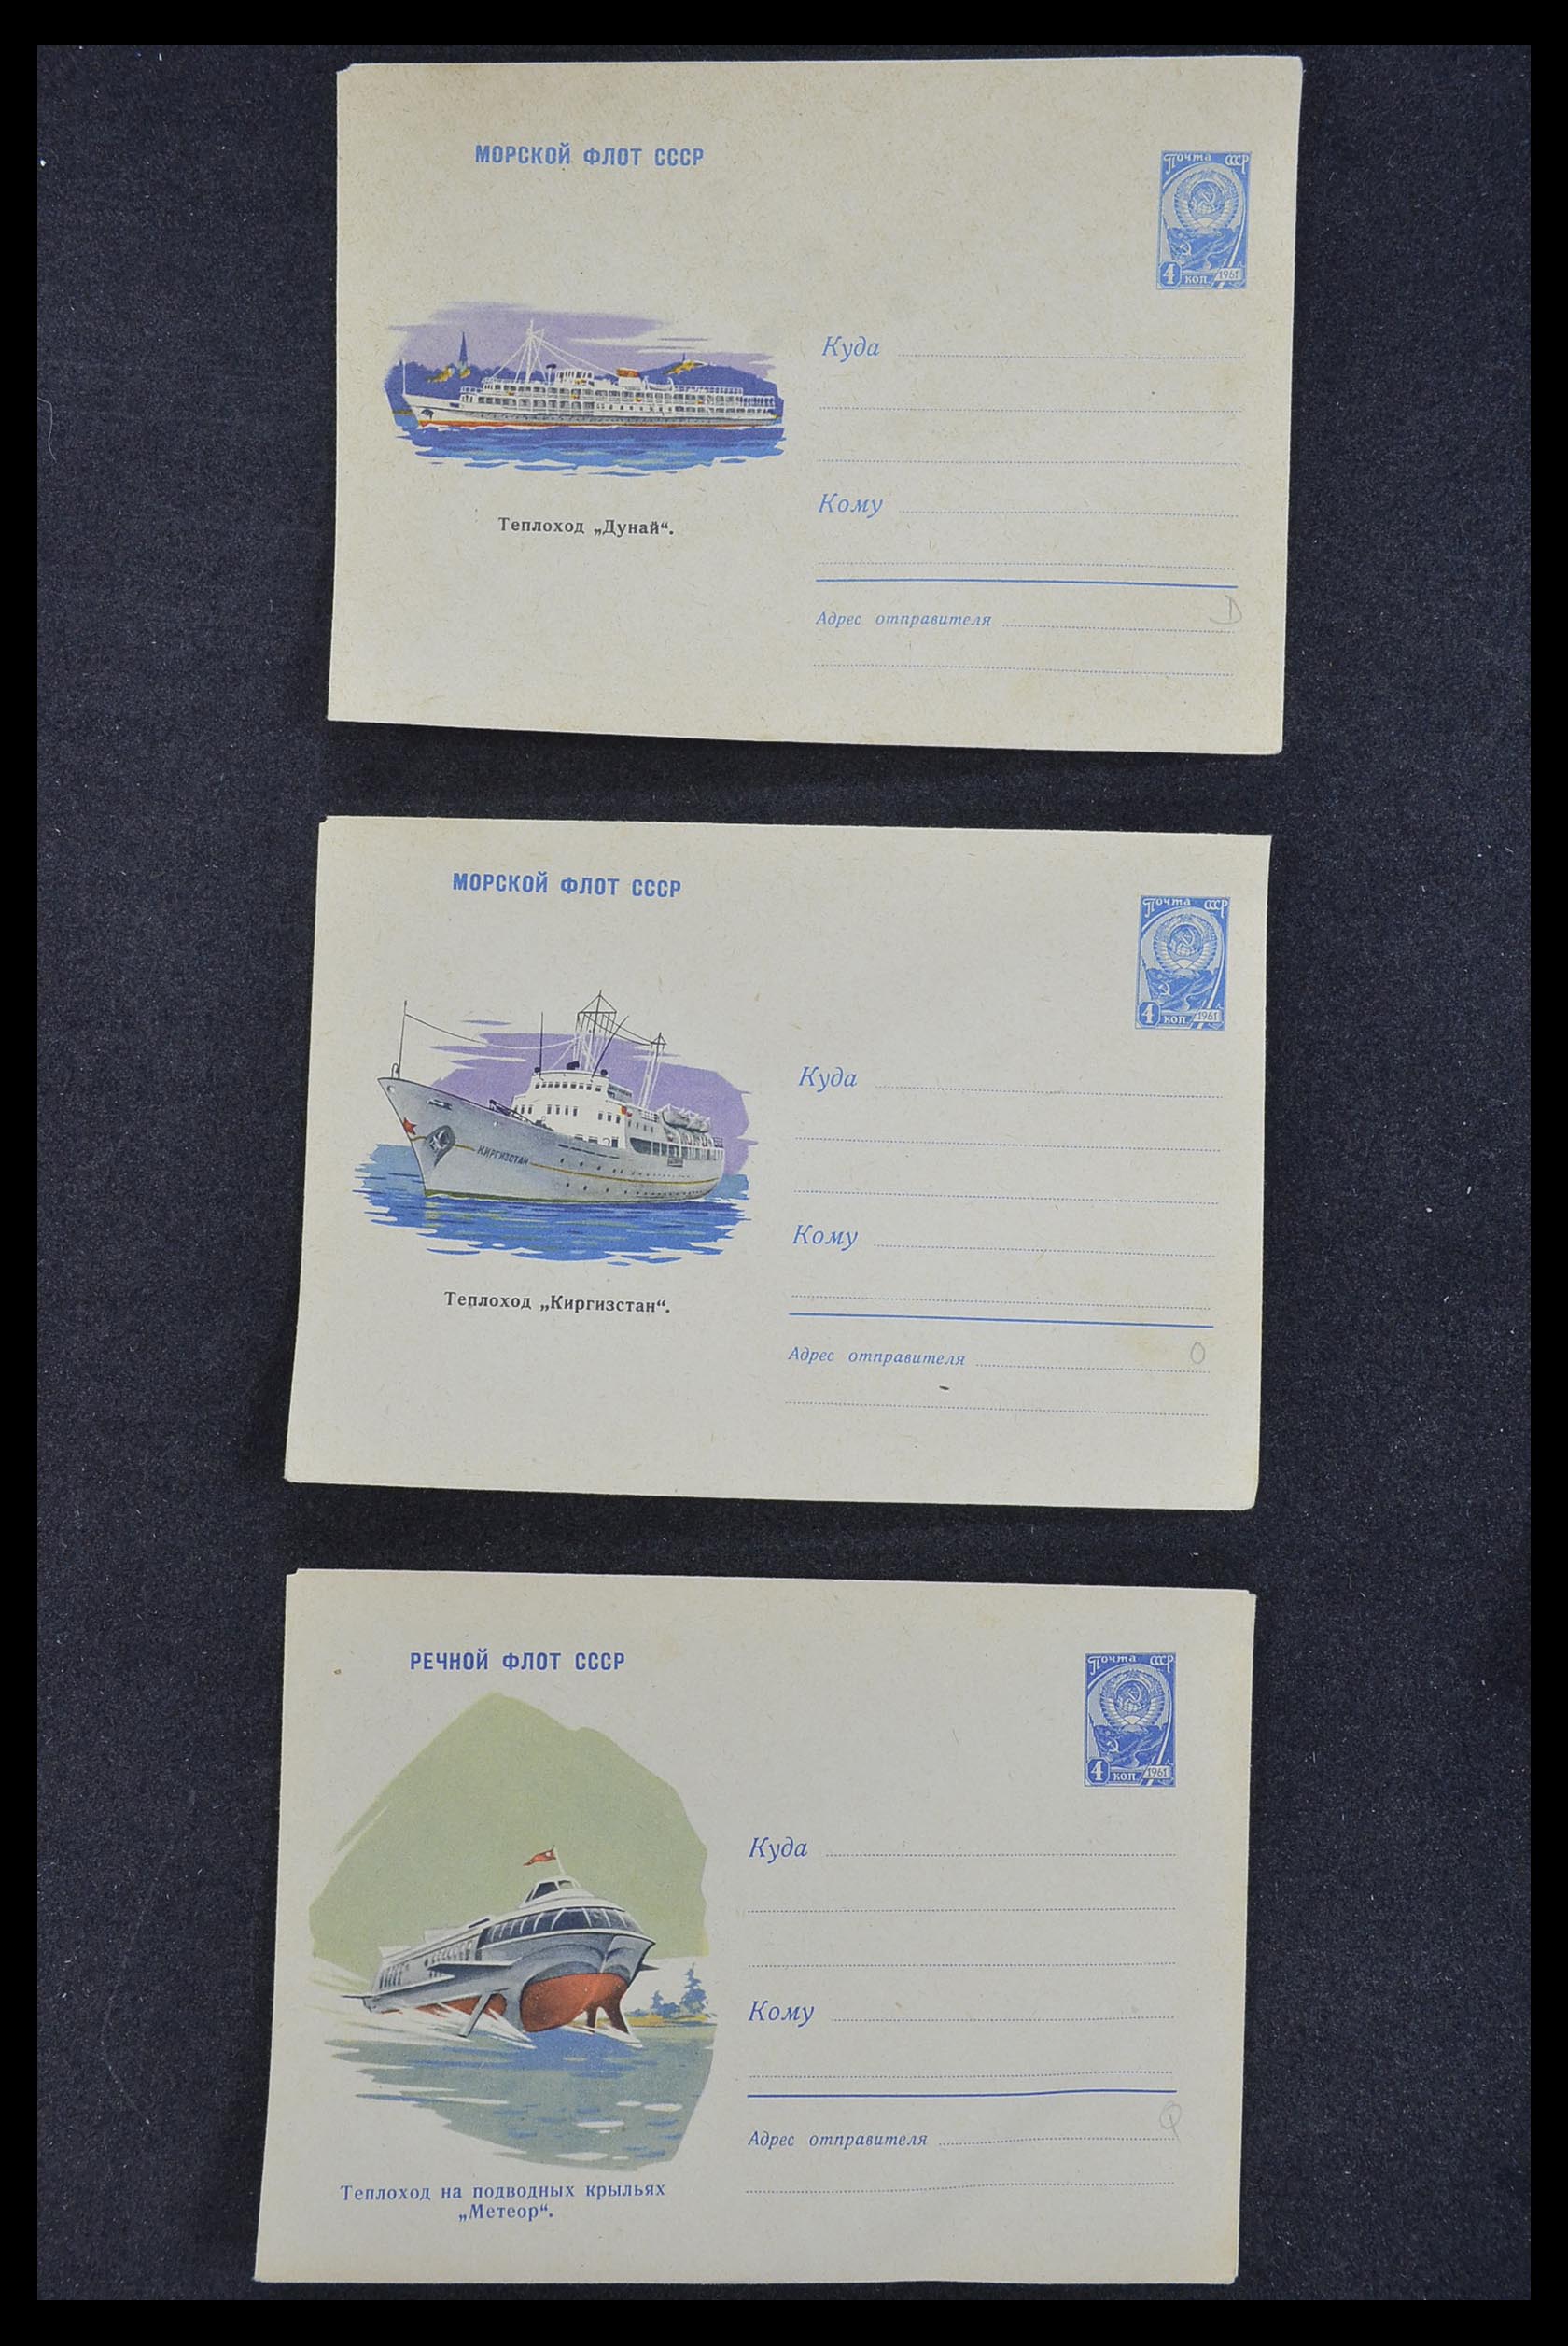 33932 177 - Postzegelverzameling 33932 Rusland postwaaardestukken 1953-1967.